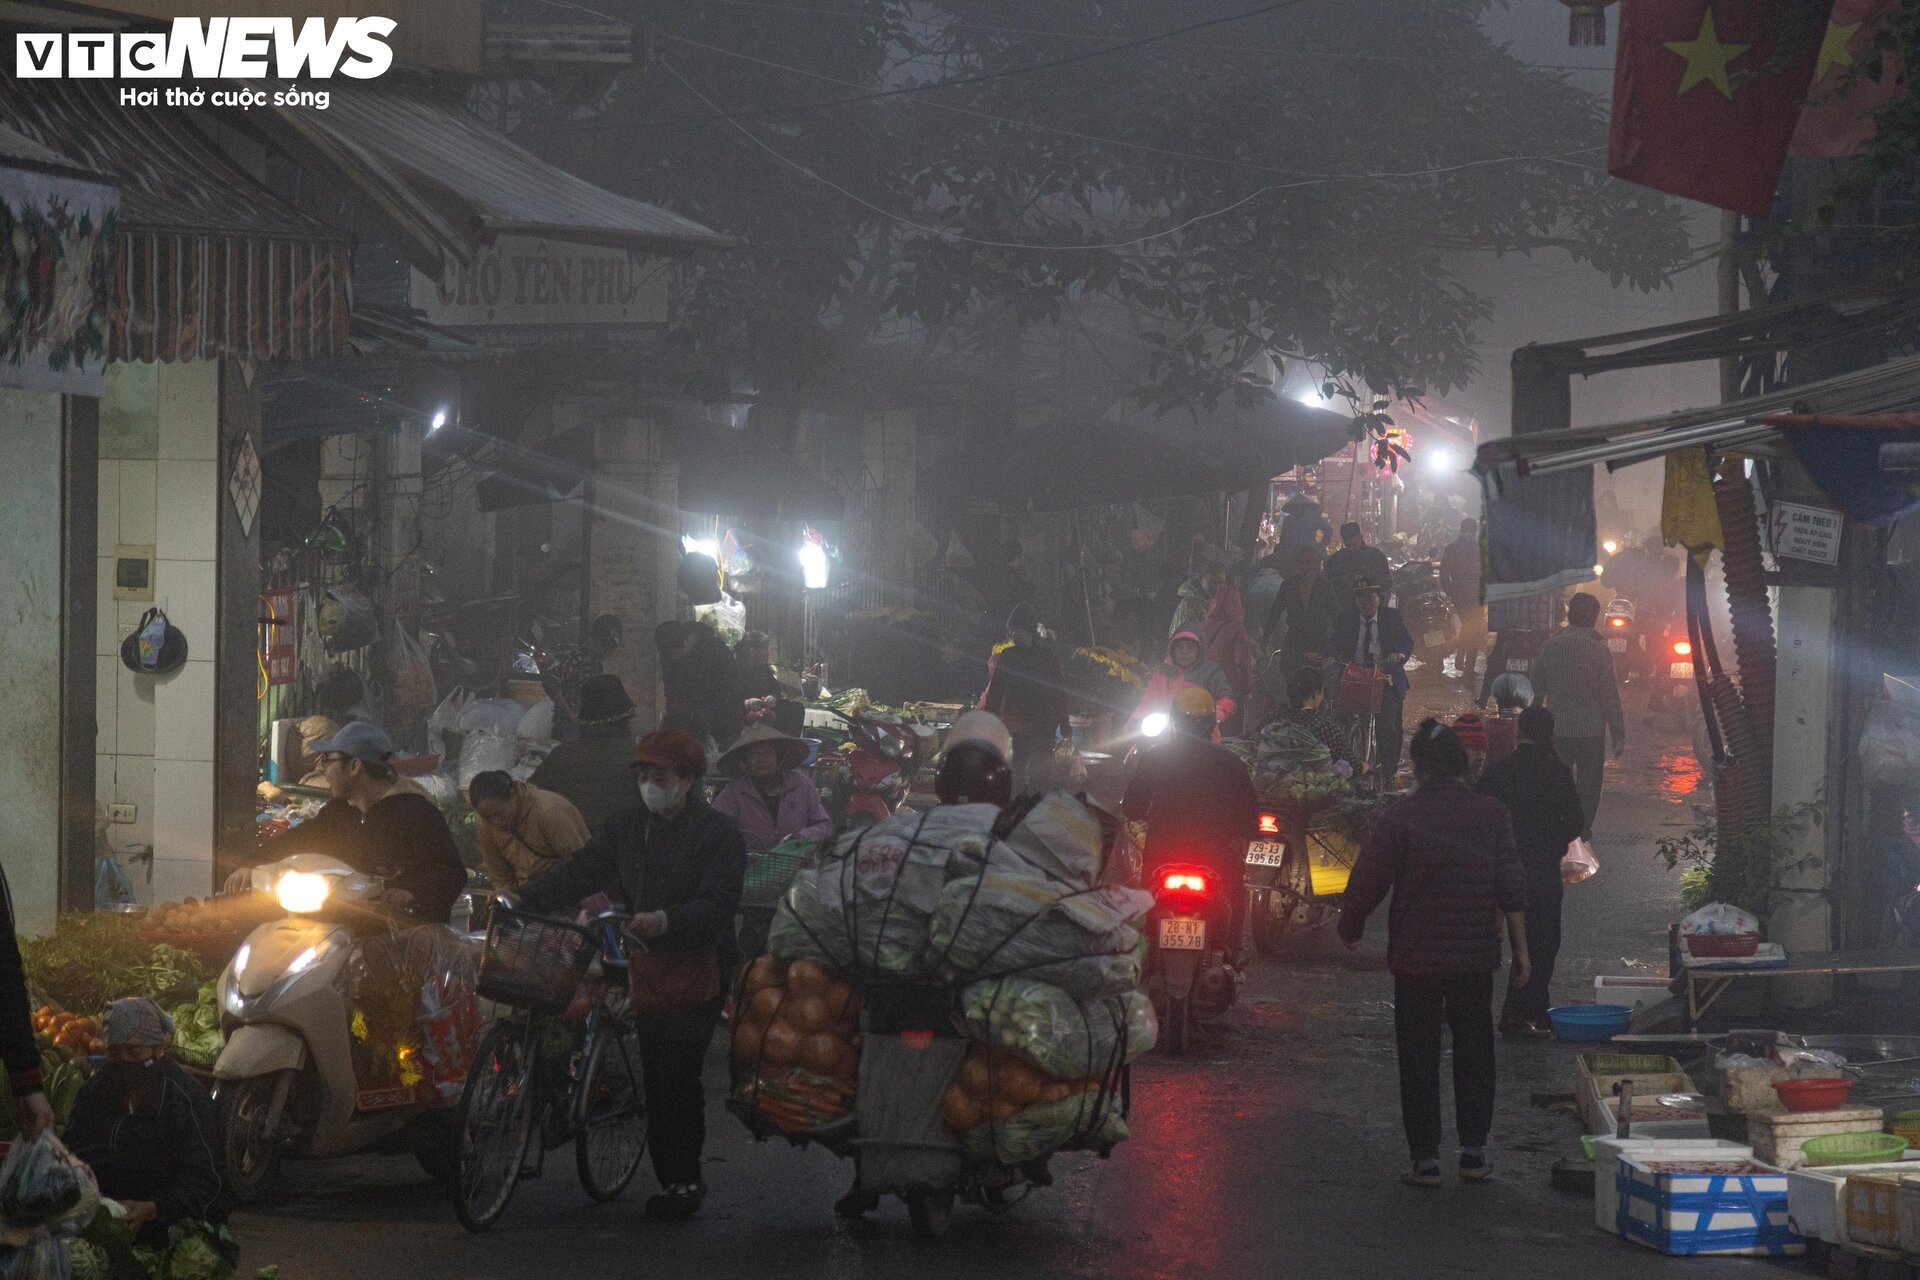 Trời Hà Nội mịt mù sương, chợ vẫn đông người sắm lễ ông Công ông Táo từ sáng sớm - Ảnh 4.